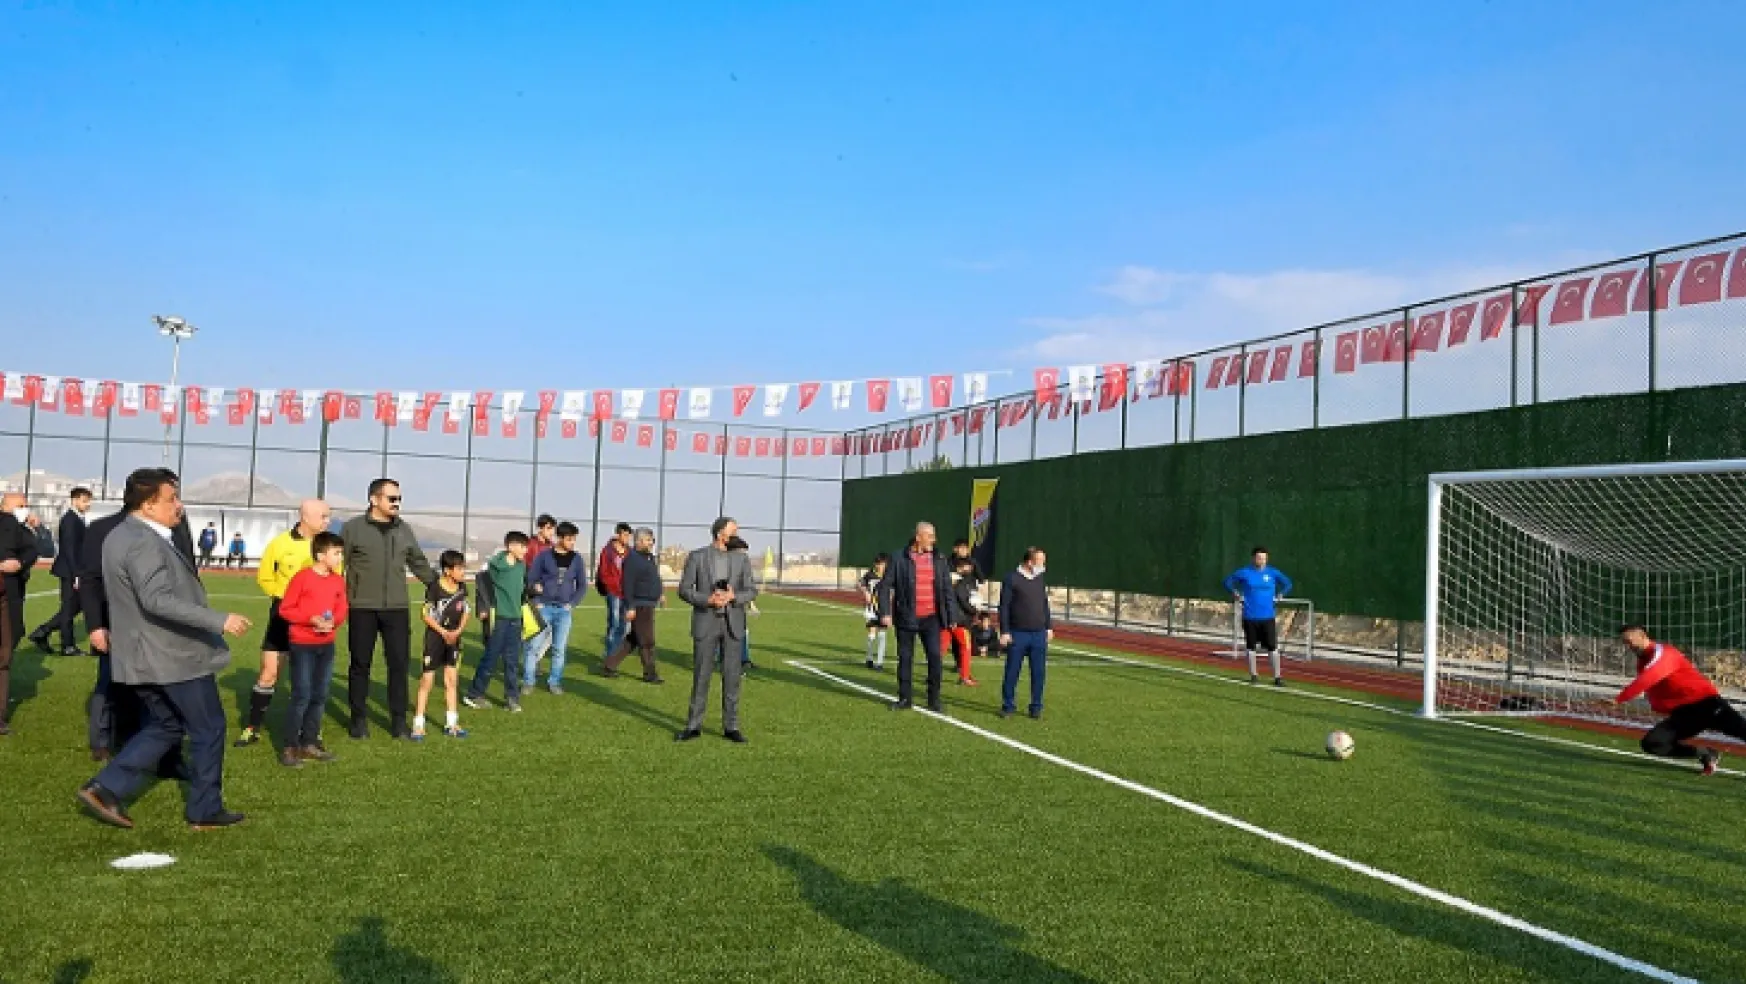 Gürkan: Malatya'nın 50 Yılına Hitap Edebilecek Spor Altyapısı Bu Dönemde Gerçekleştiriliyor